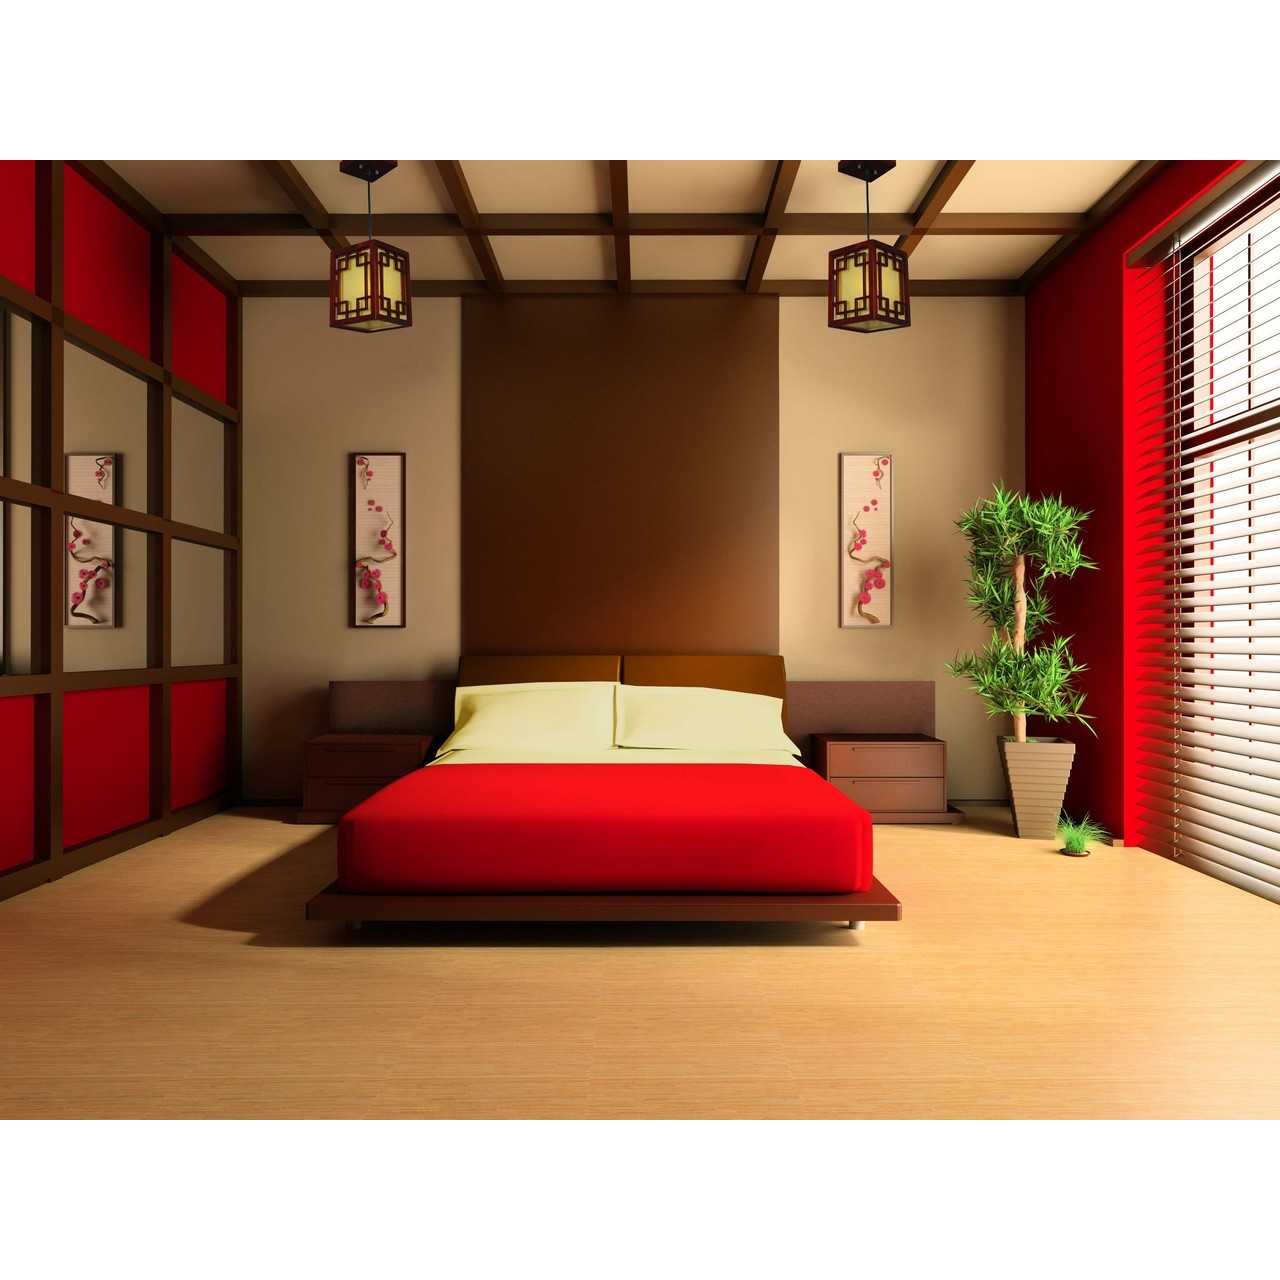 Из этой статьи вы узнаете какие идеи стоит реализовать при оформлении спальни в японском стиле, какие использовать материалы, мебель и цветовые решения